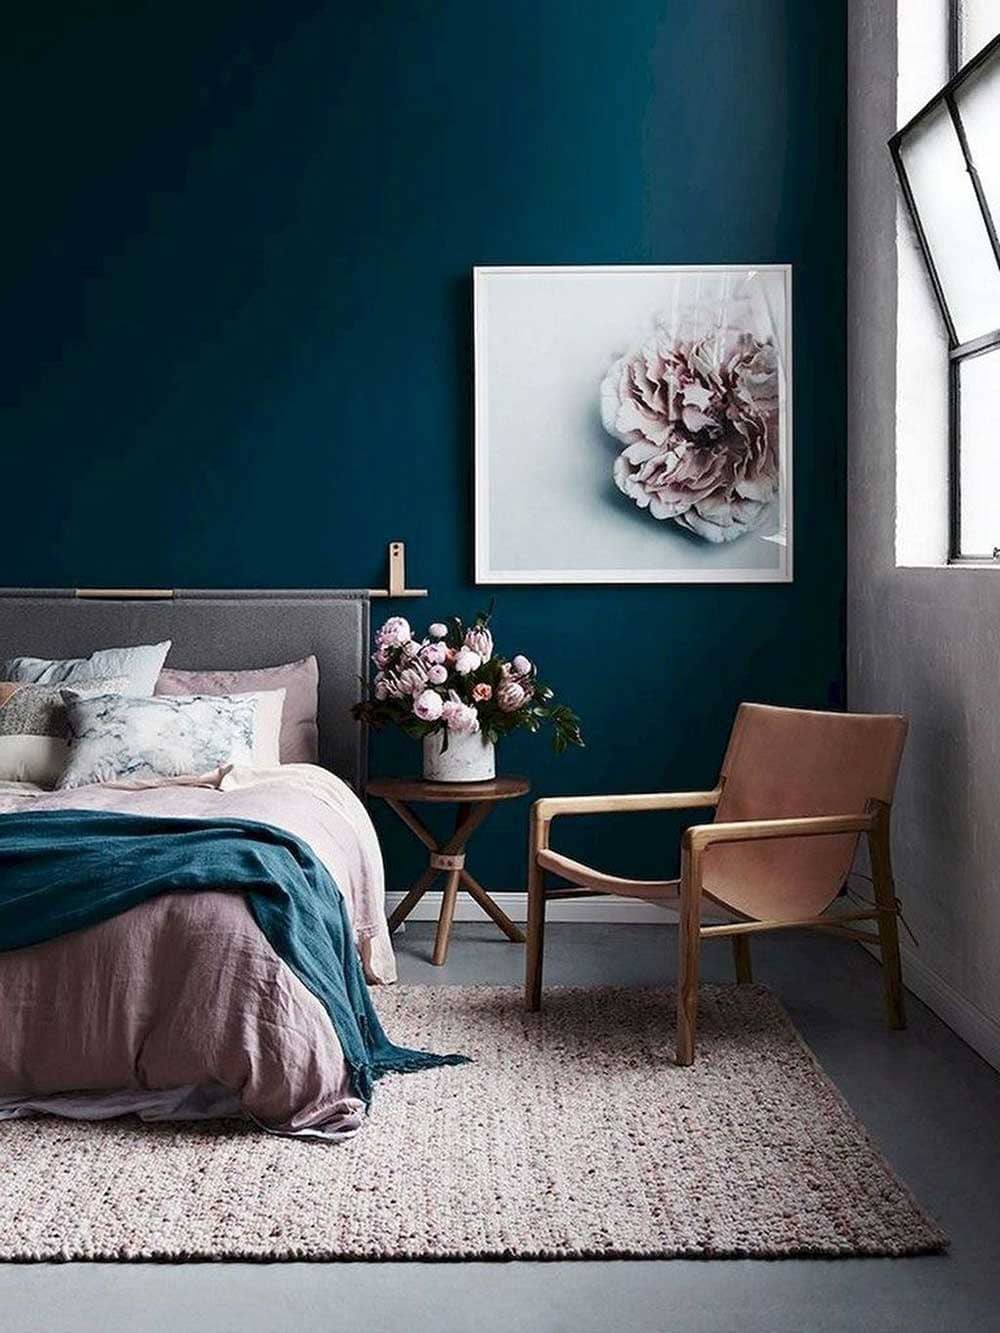 Chambre chic aux murs bleu avec touches de rose et tapis chiné texturé